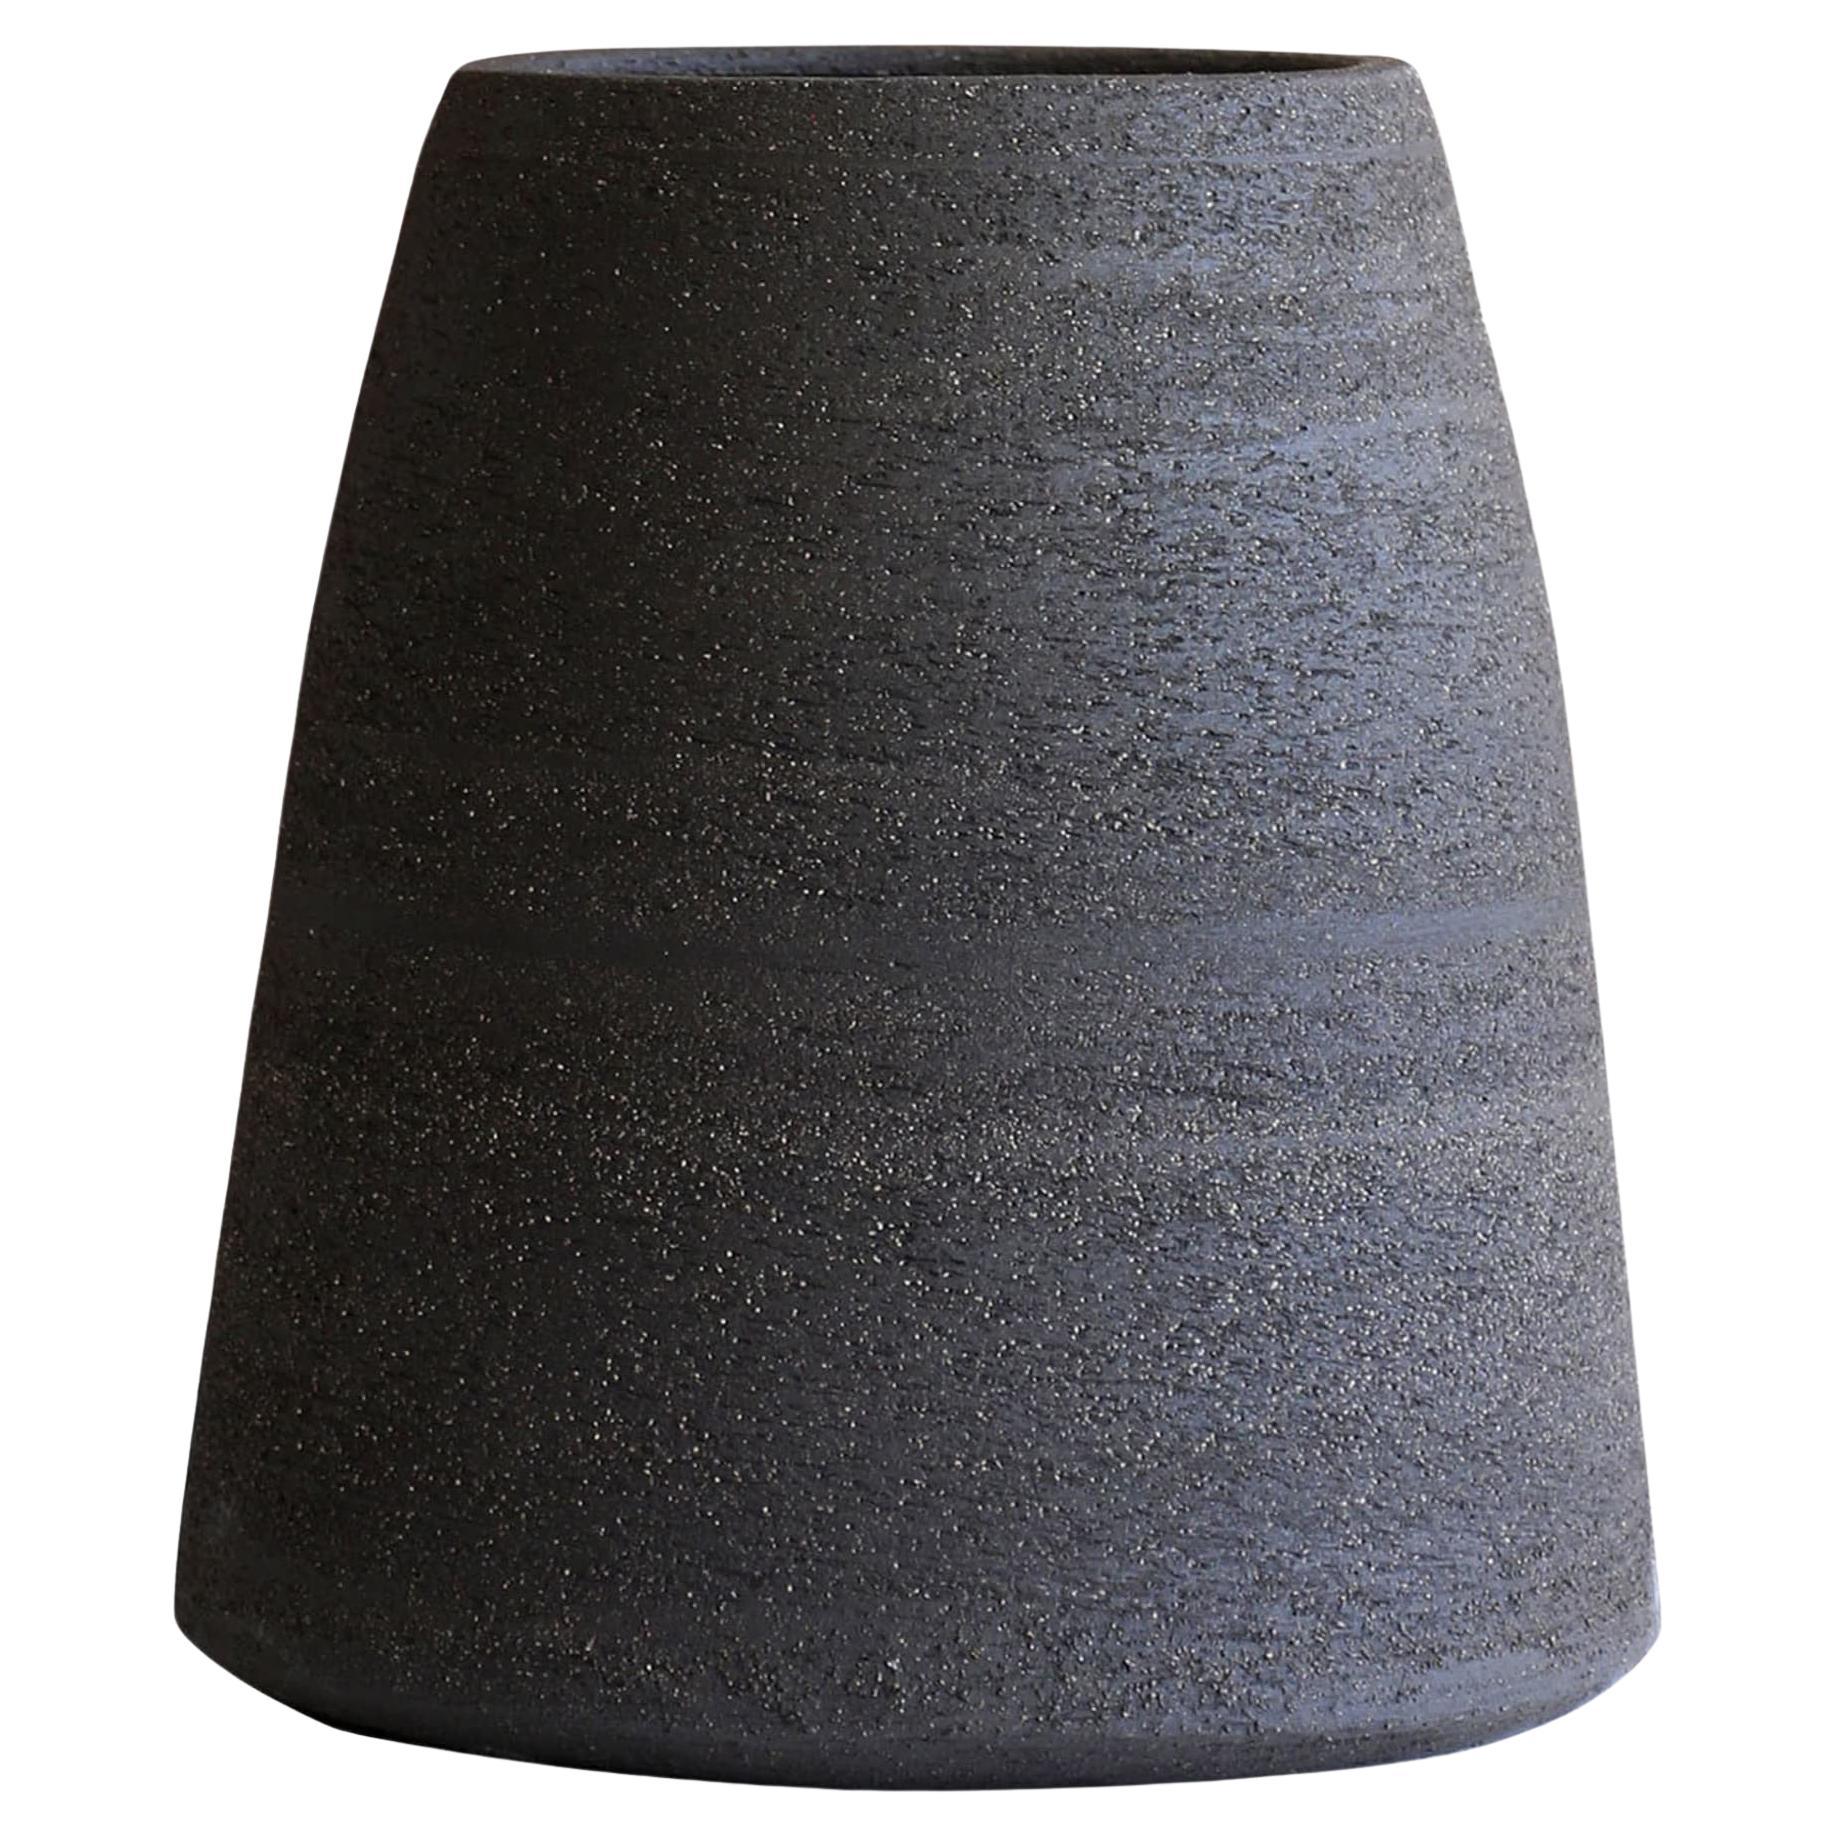 Tapered Carbon-Black Decorative Vase For Sale